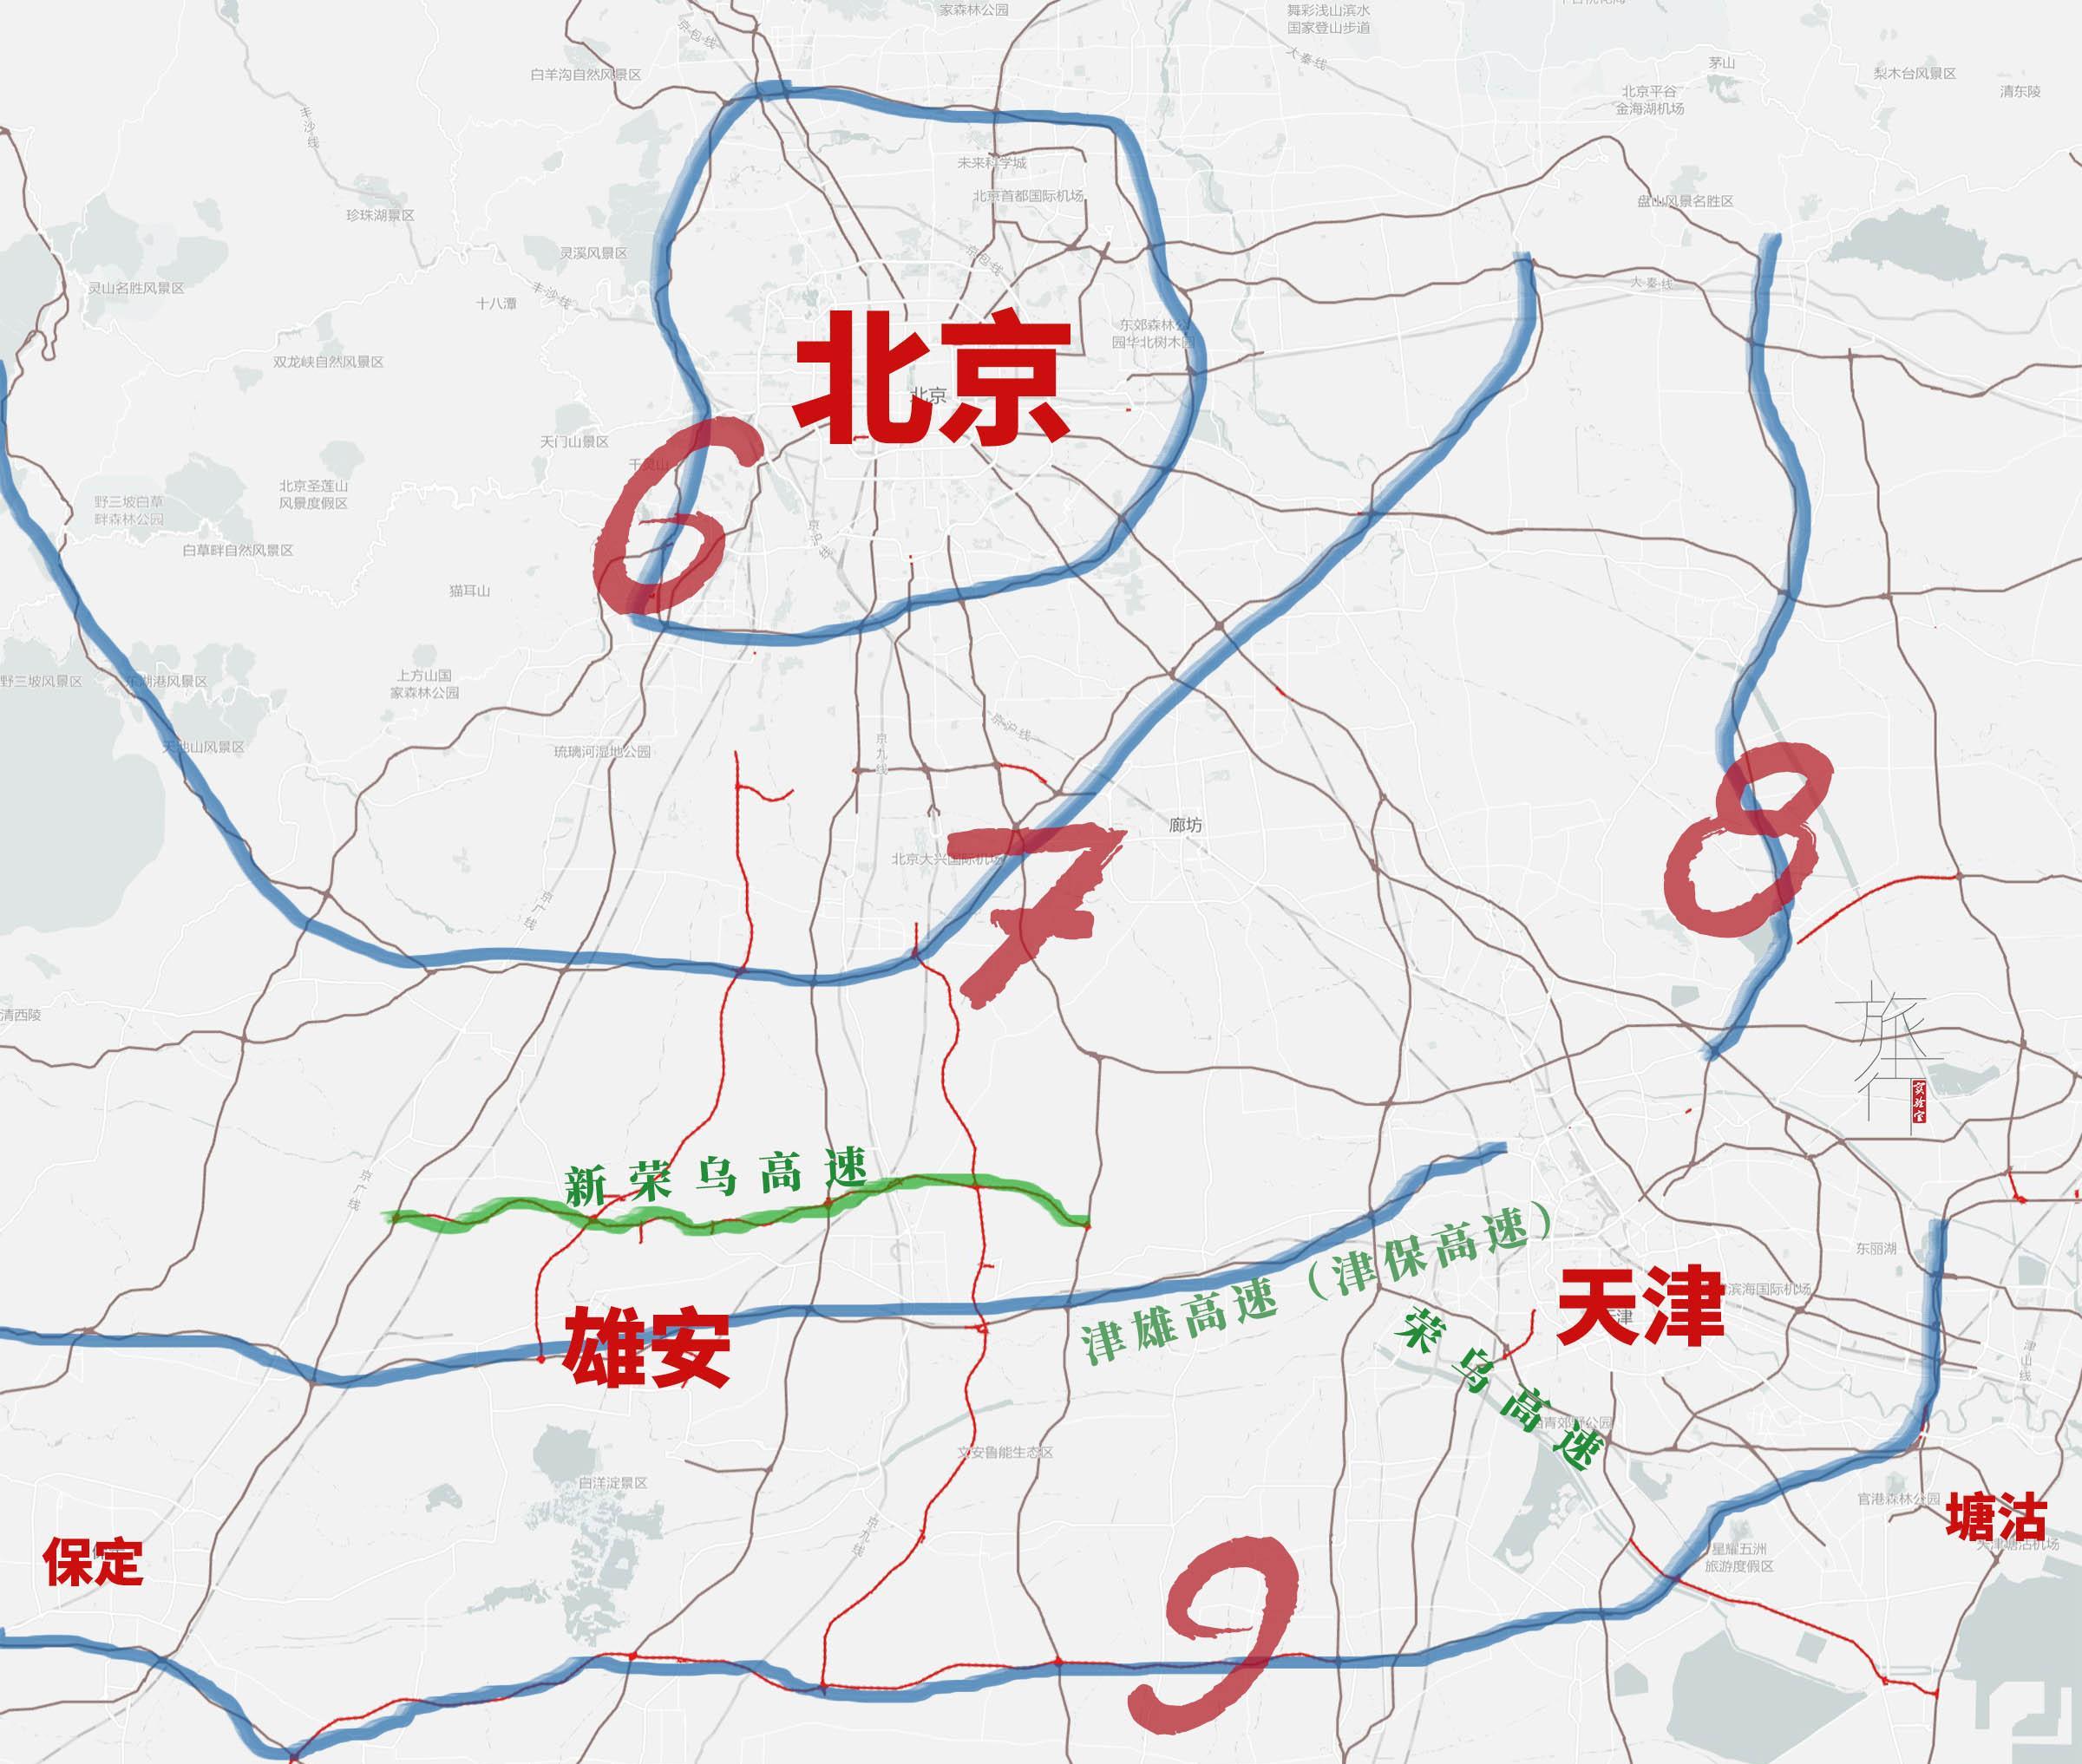 环绕北京的蓝色环线是北京六环;向外的蓝线是环北京高速,也就是北京